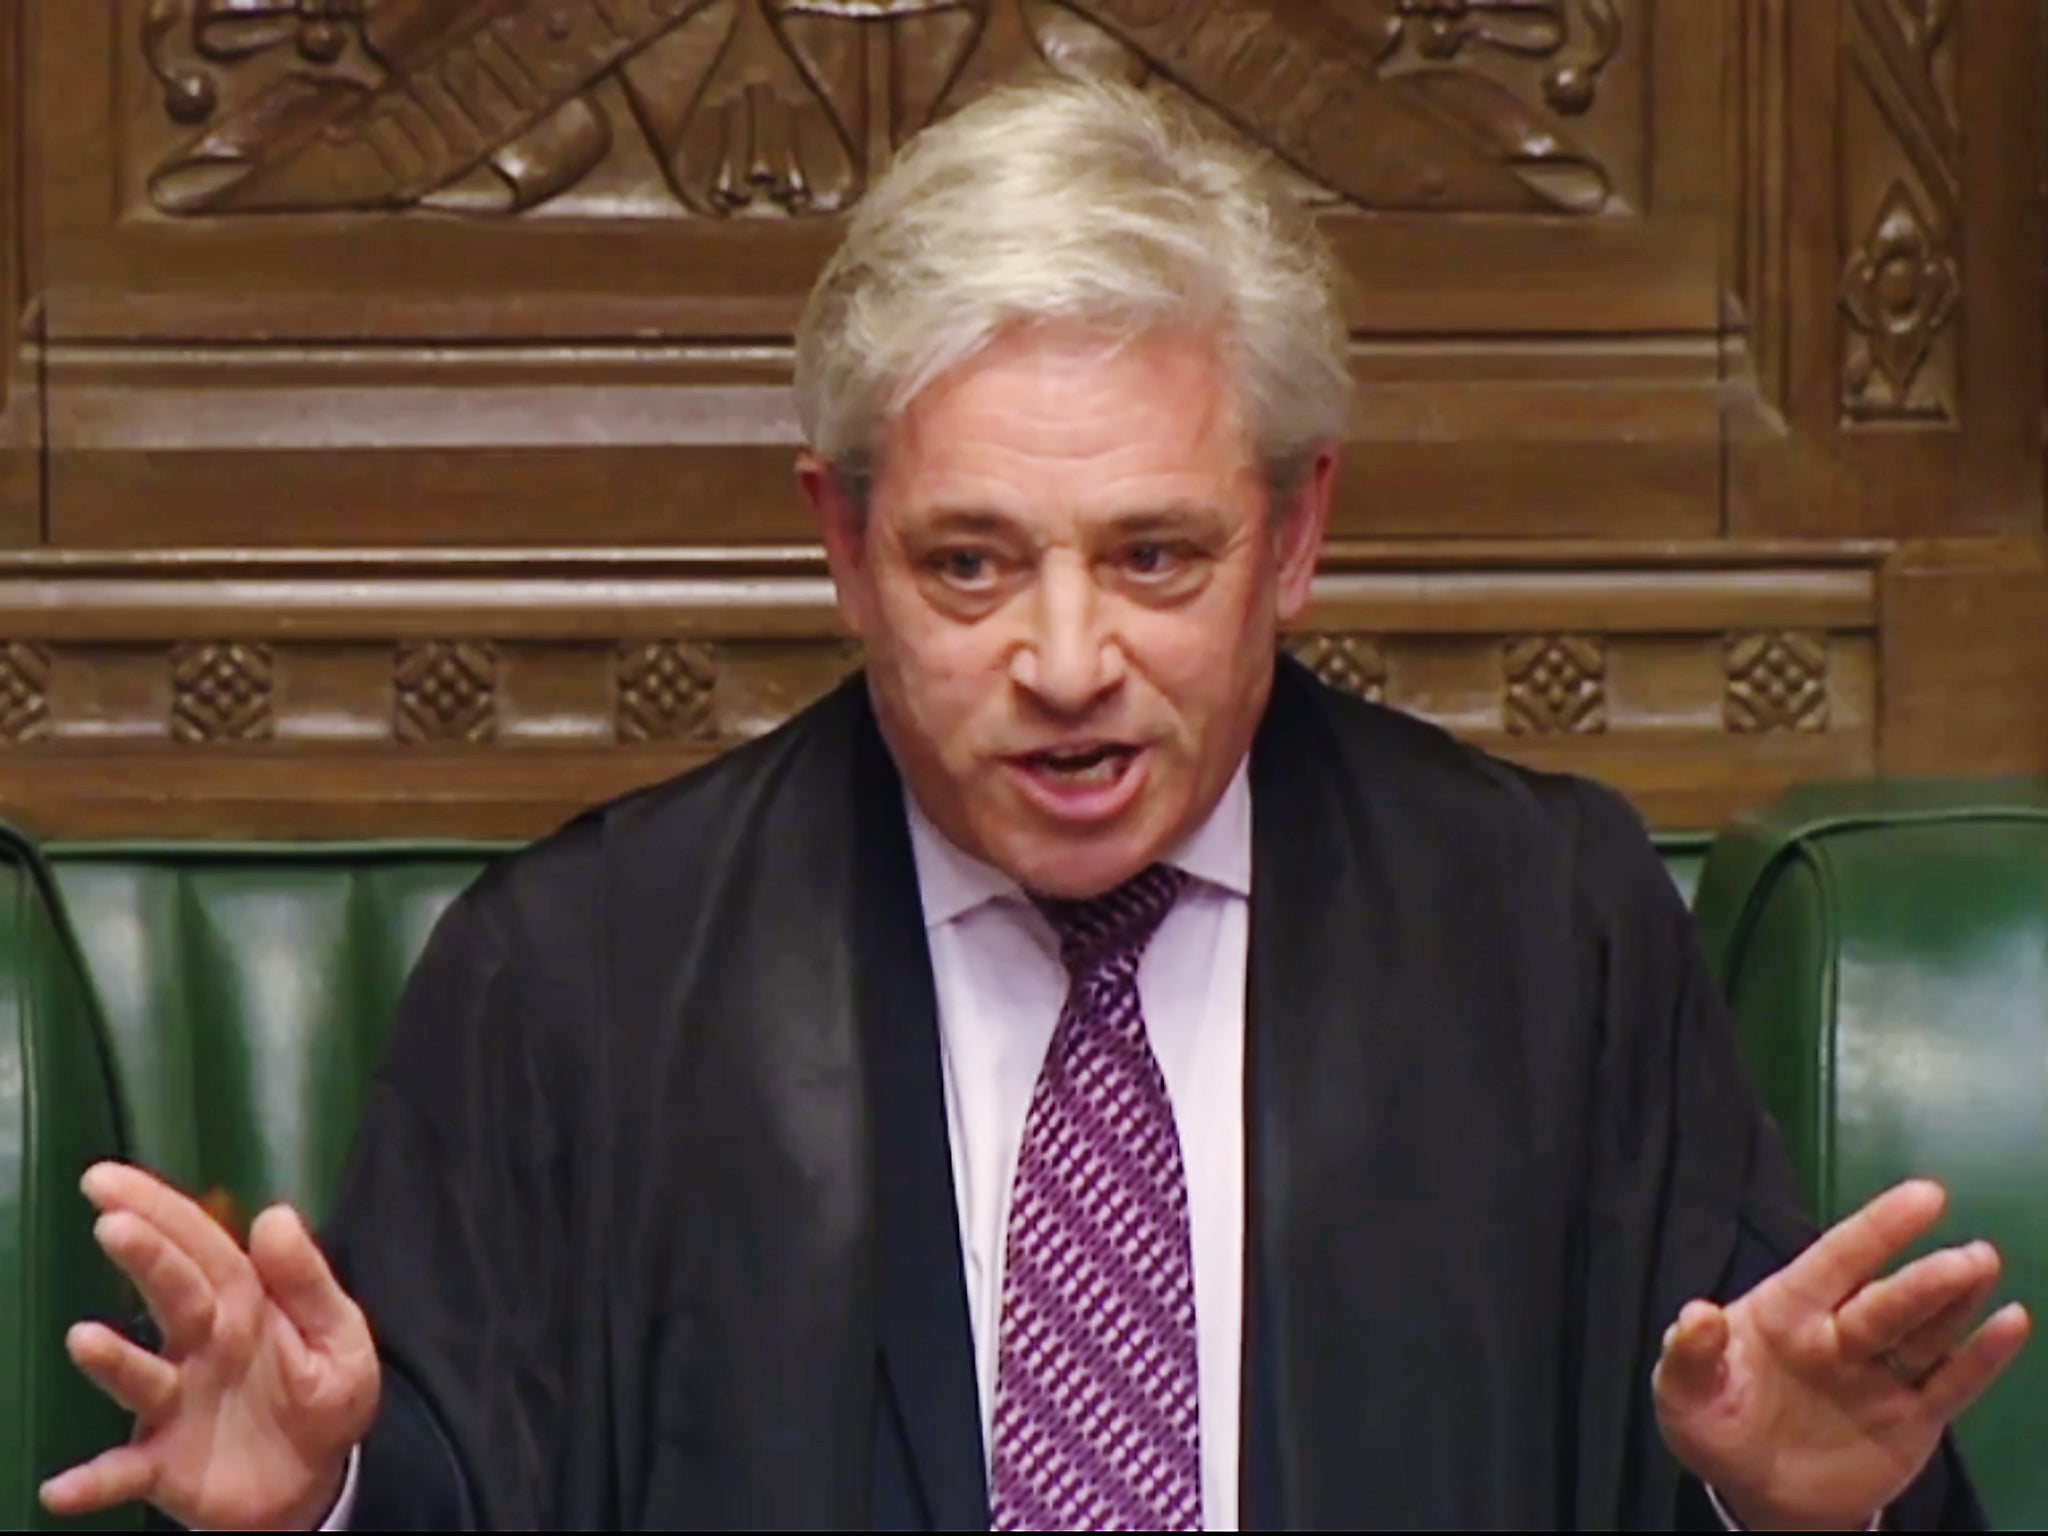 Speaker of the House of Commons John Bercow